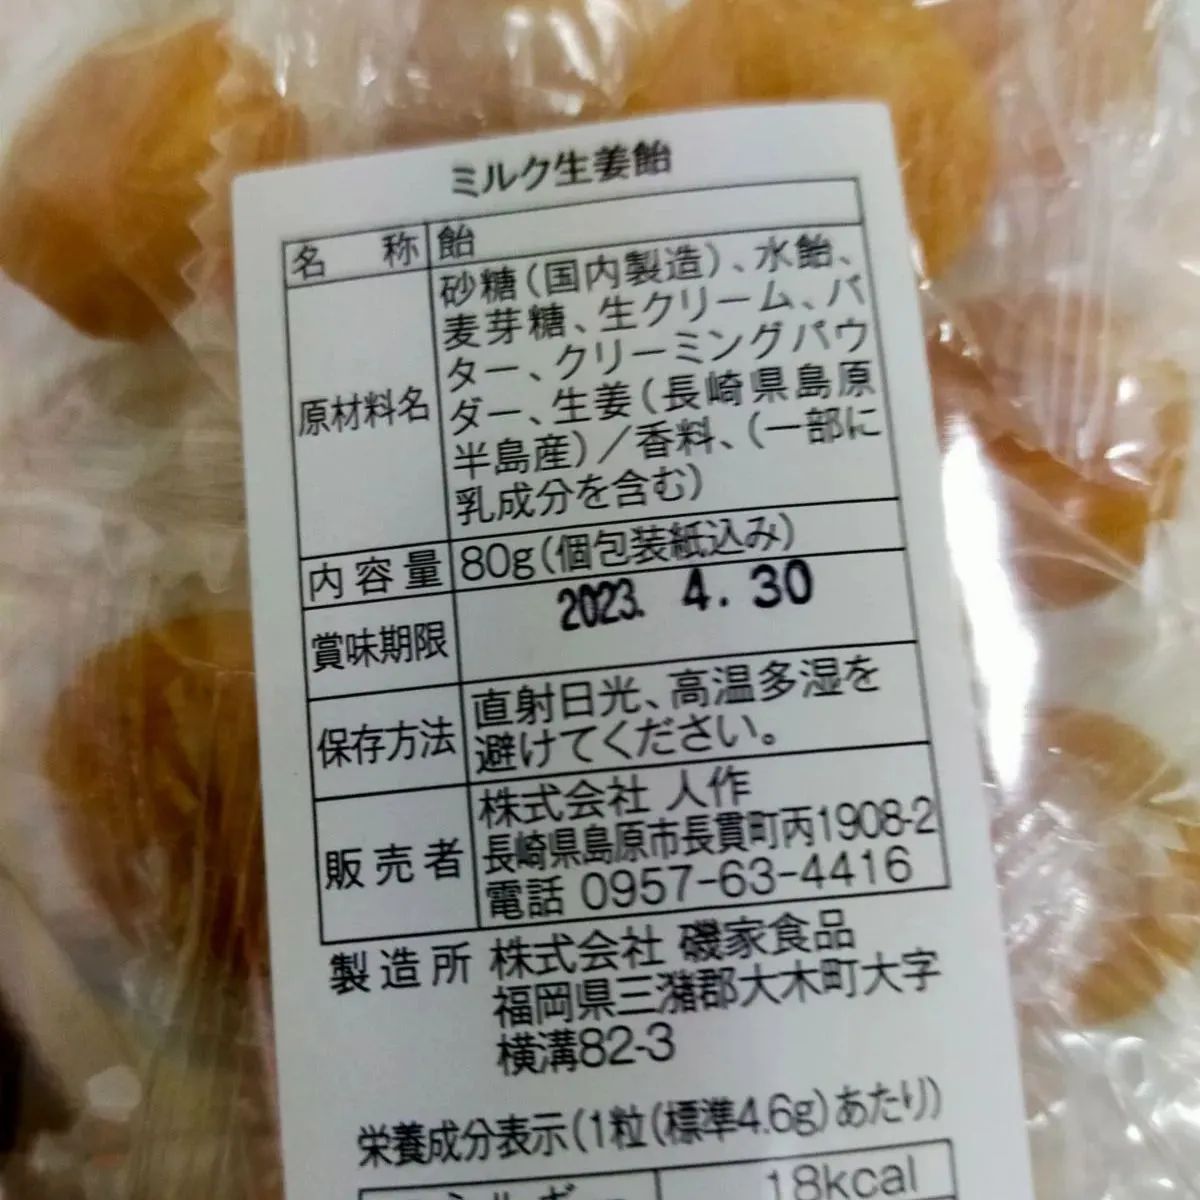 松本農園さんの生姜パリパリ、生姜飴、ミルク生姜飴のセット-1